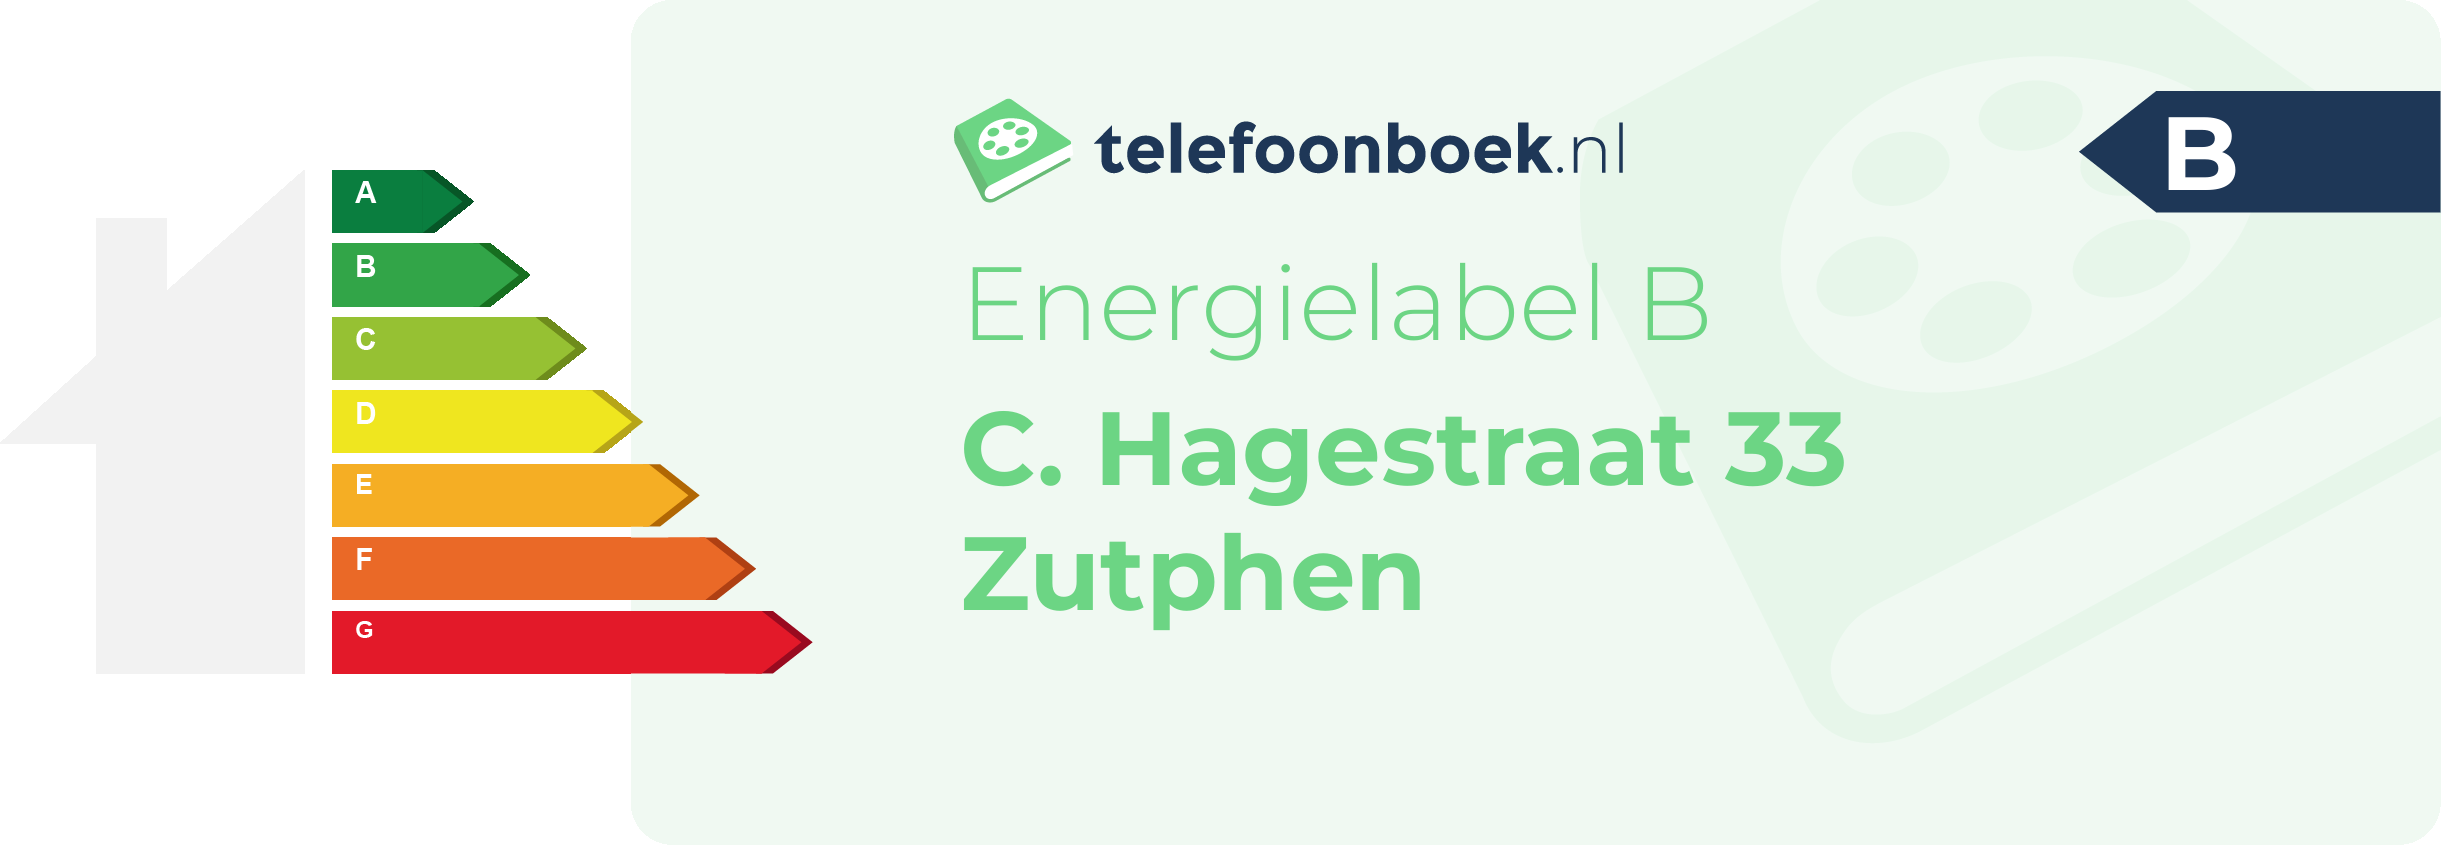 Energielabel C. Hagestraat 33 Zutphen